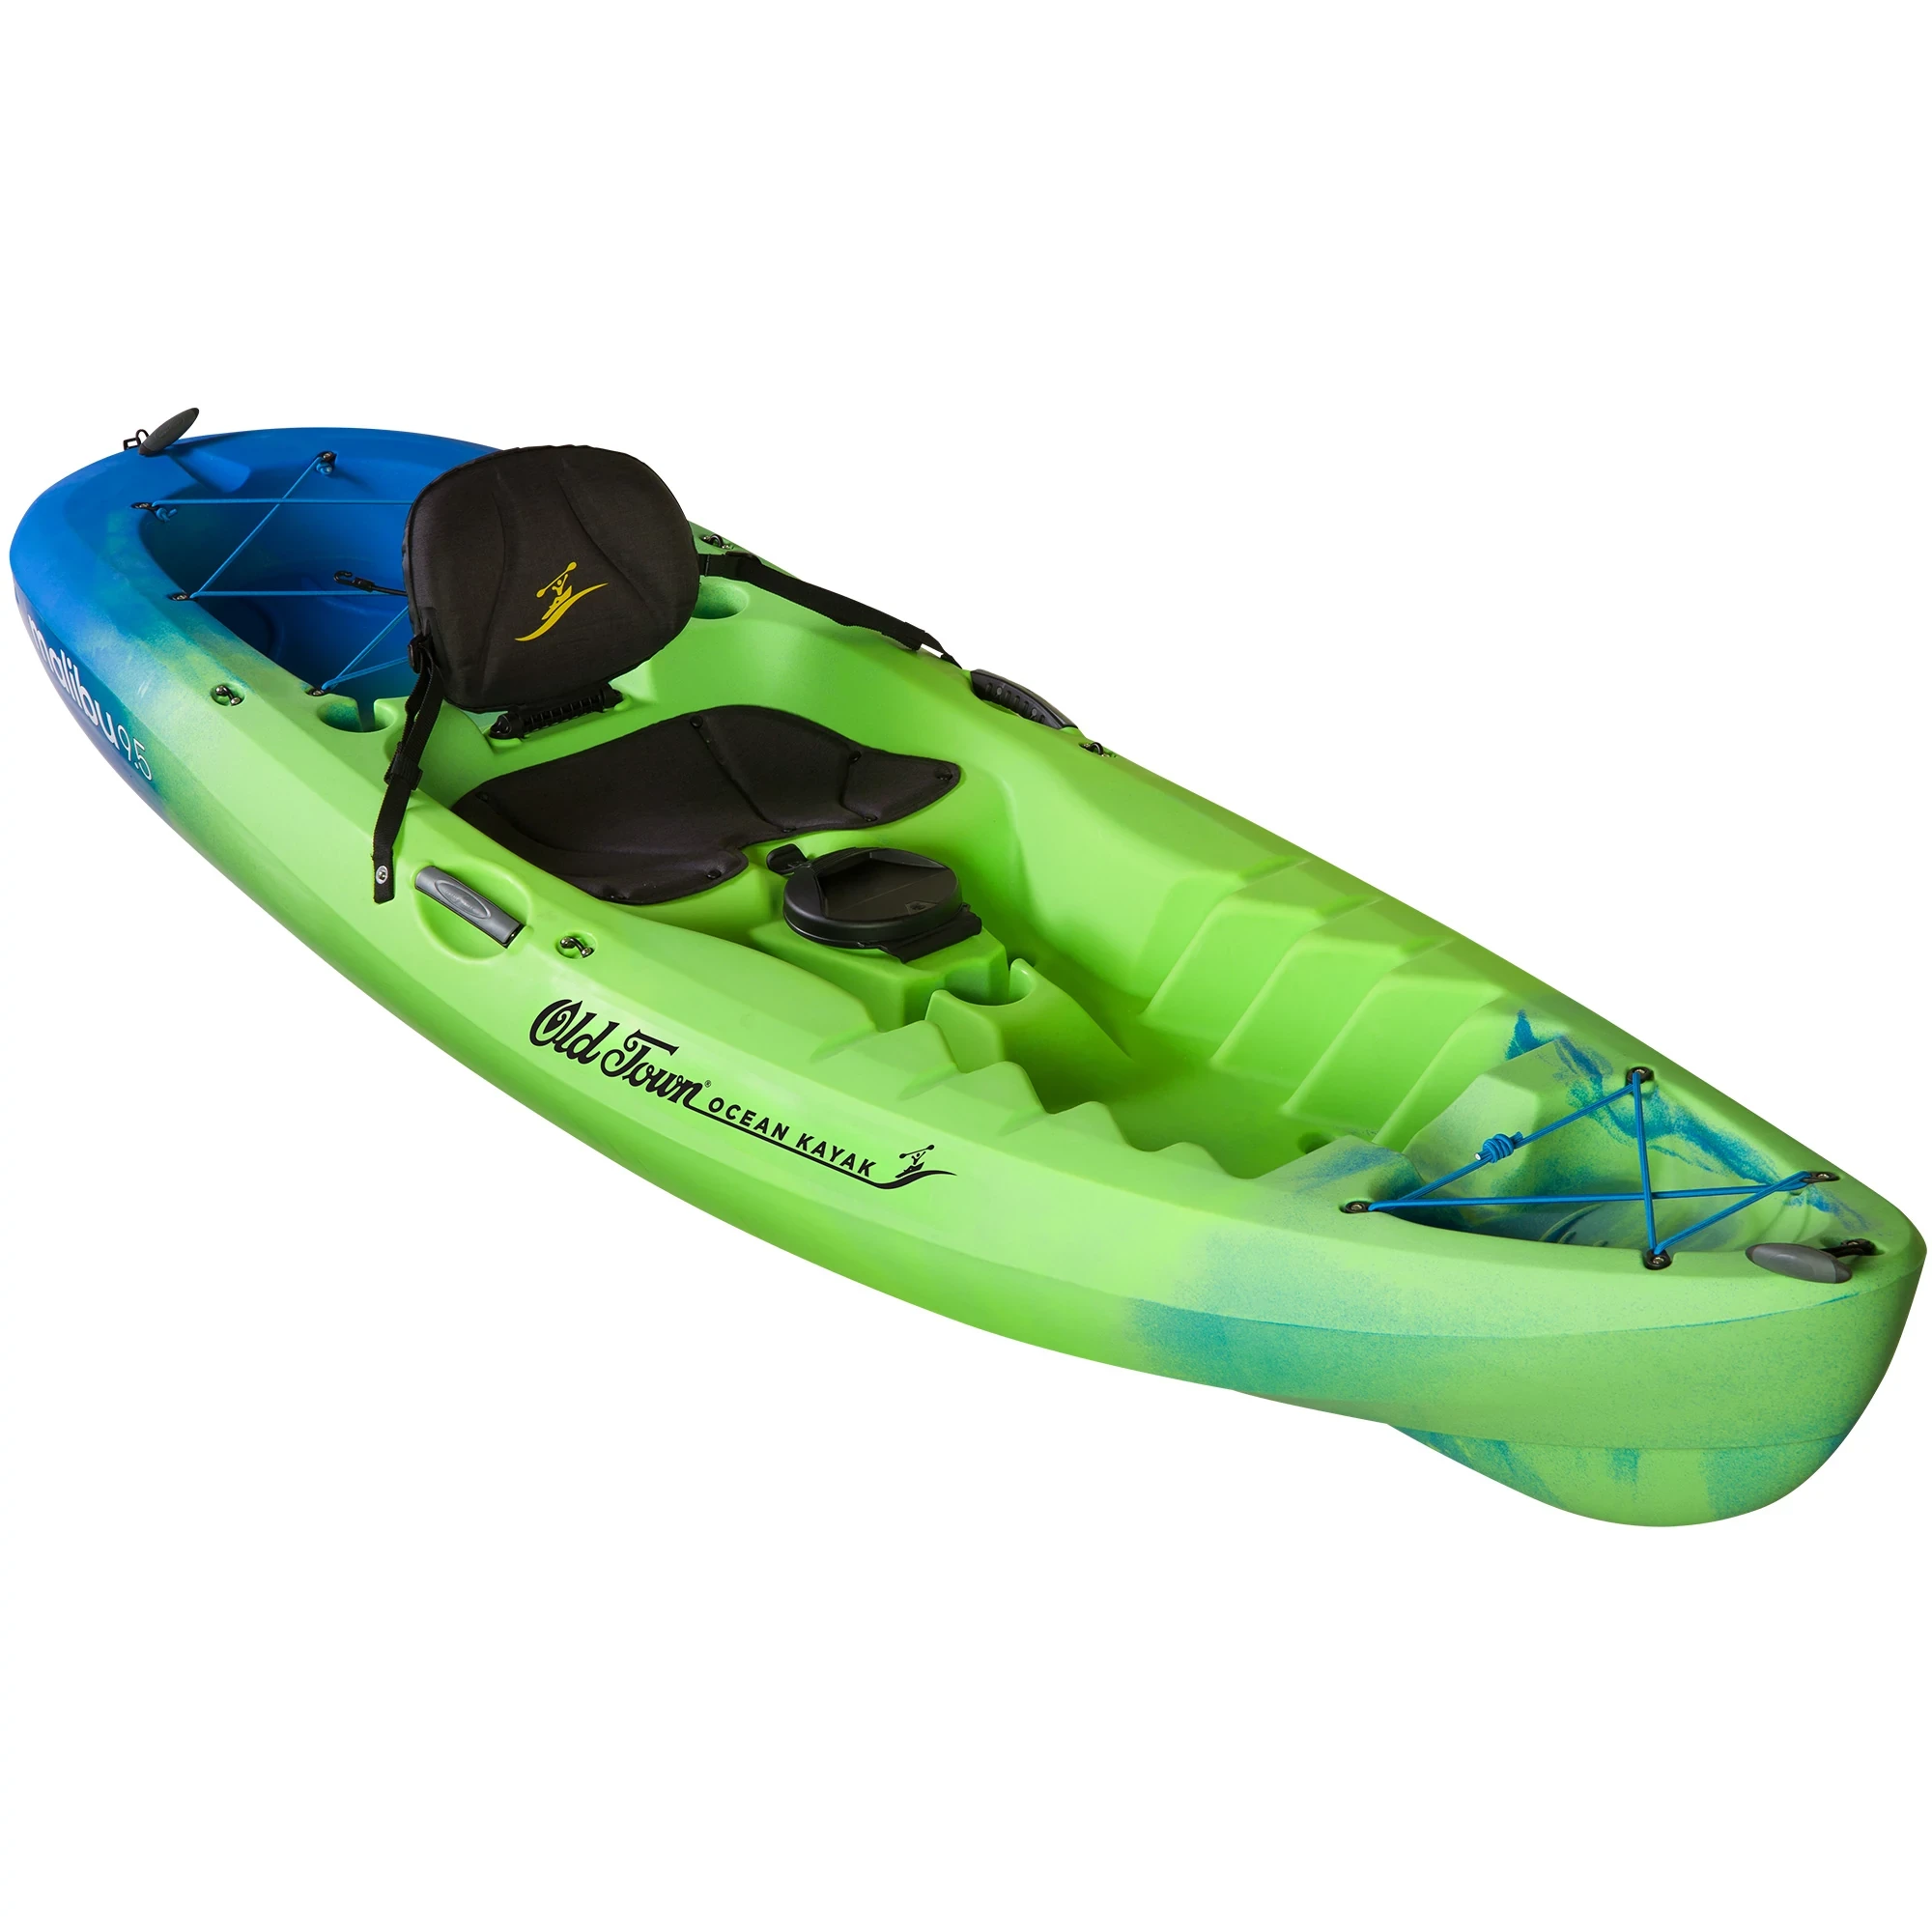 Ocean Kayak Malibu 9.5 - Ahi - Angled View